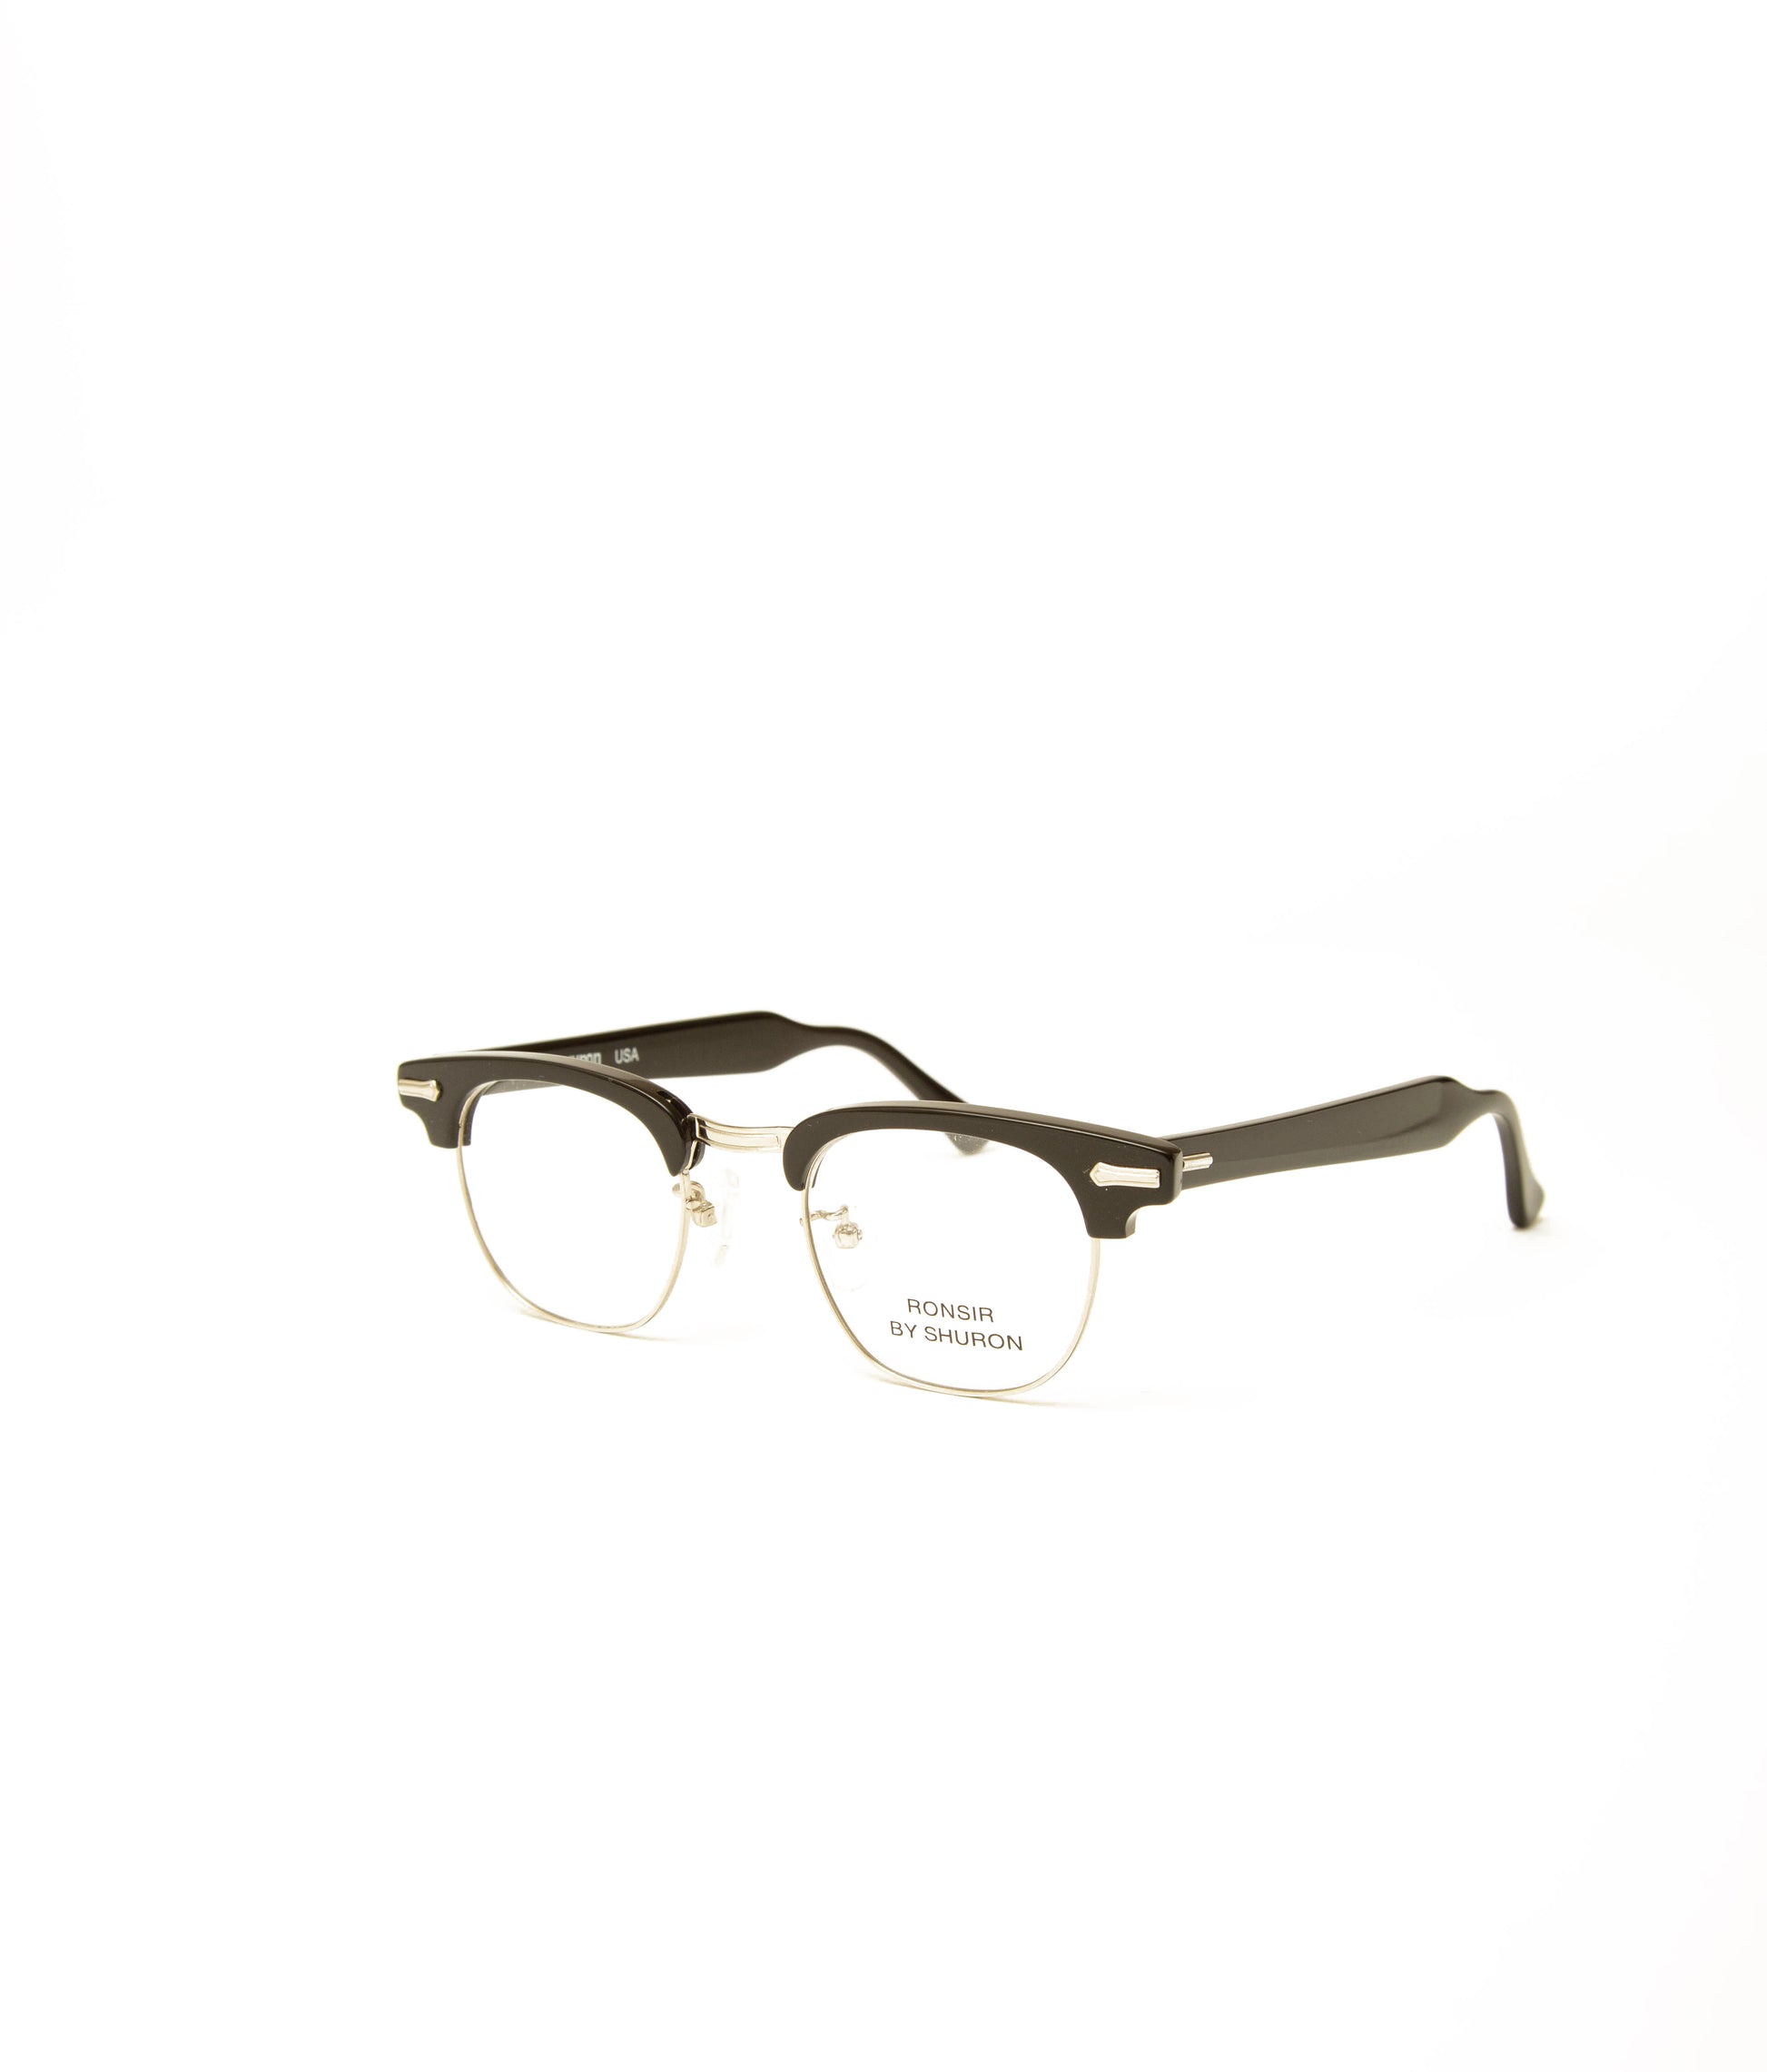 アメリカ製のシルバーのメガネ